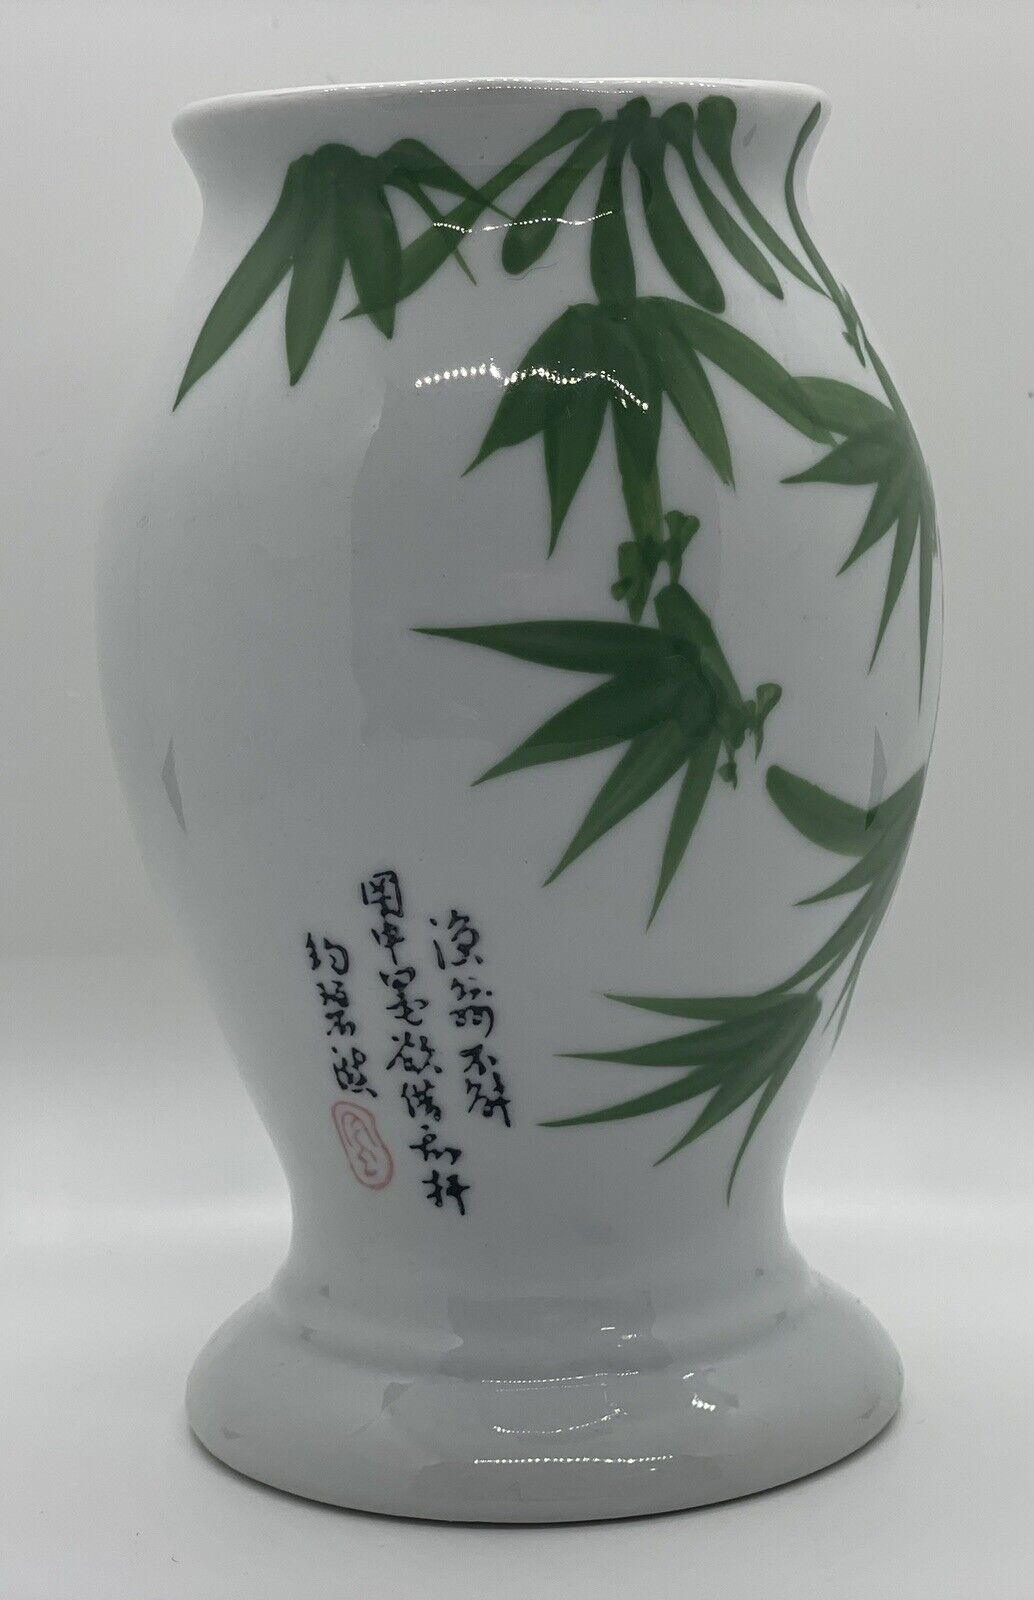 Panda Garden 6” Tall Vase, RARE Vintage